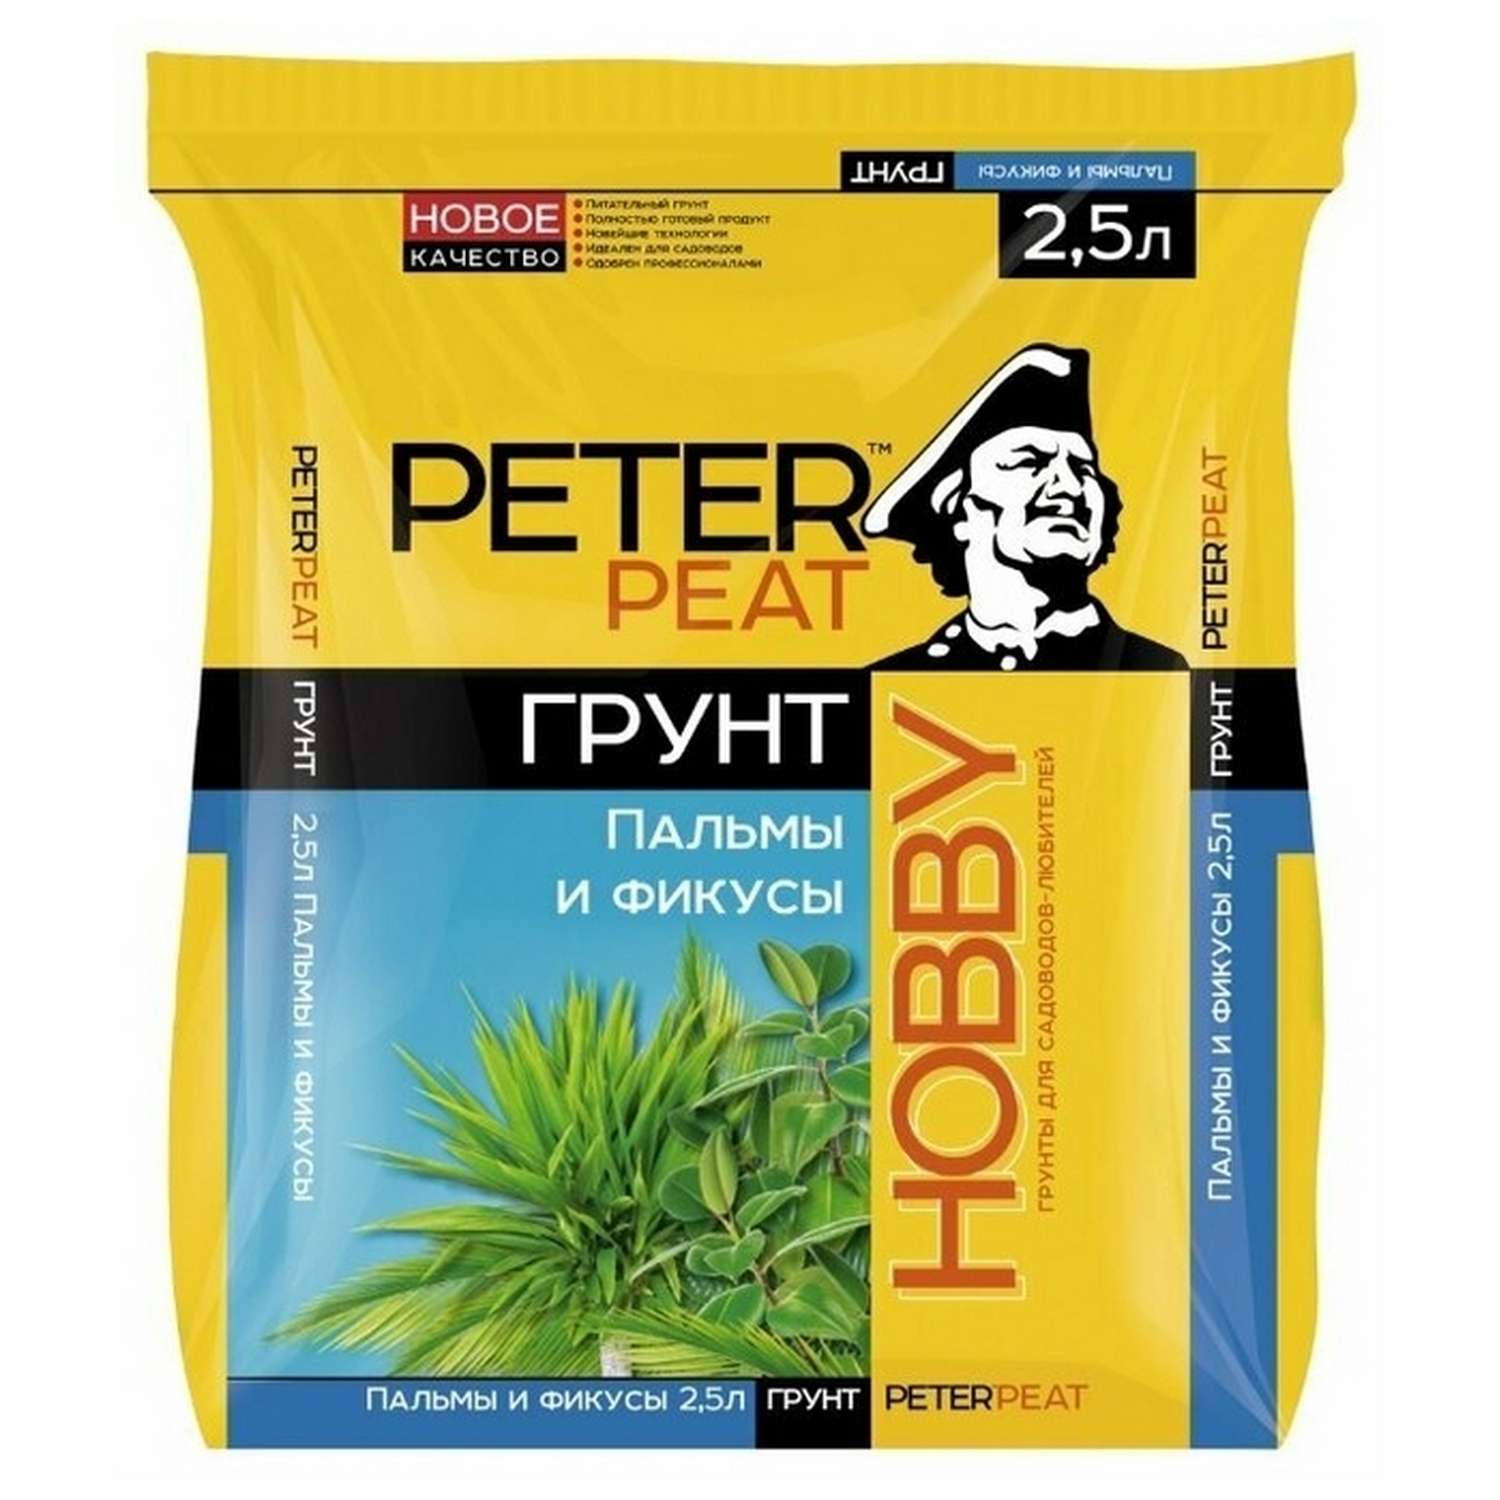 Грунт PETER PEAT Пальмы и фикусы линия Хобби 2.5л - фото 1